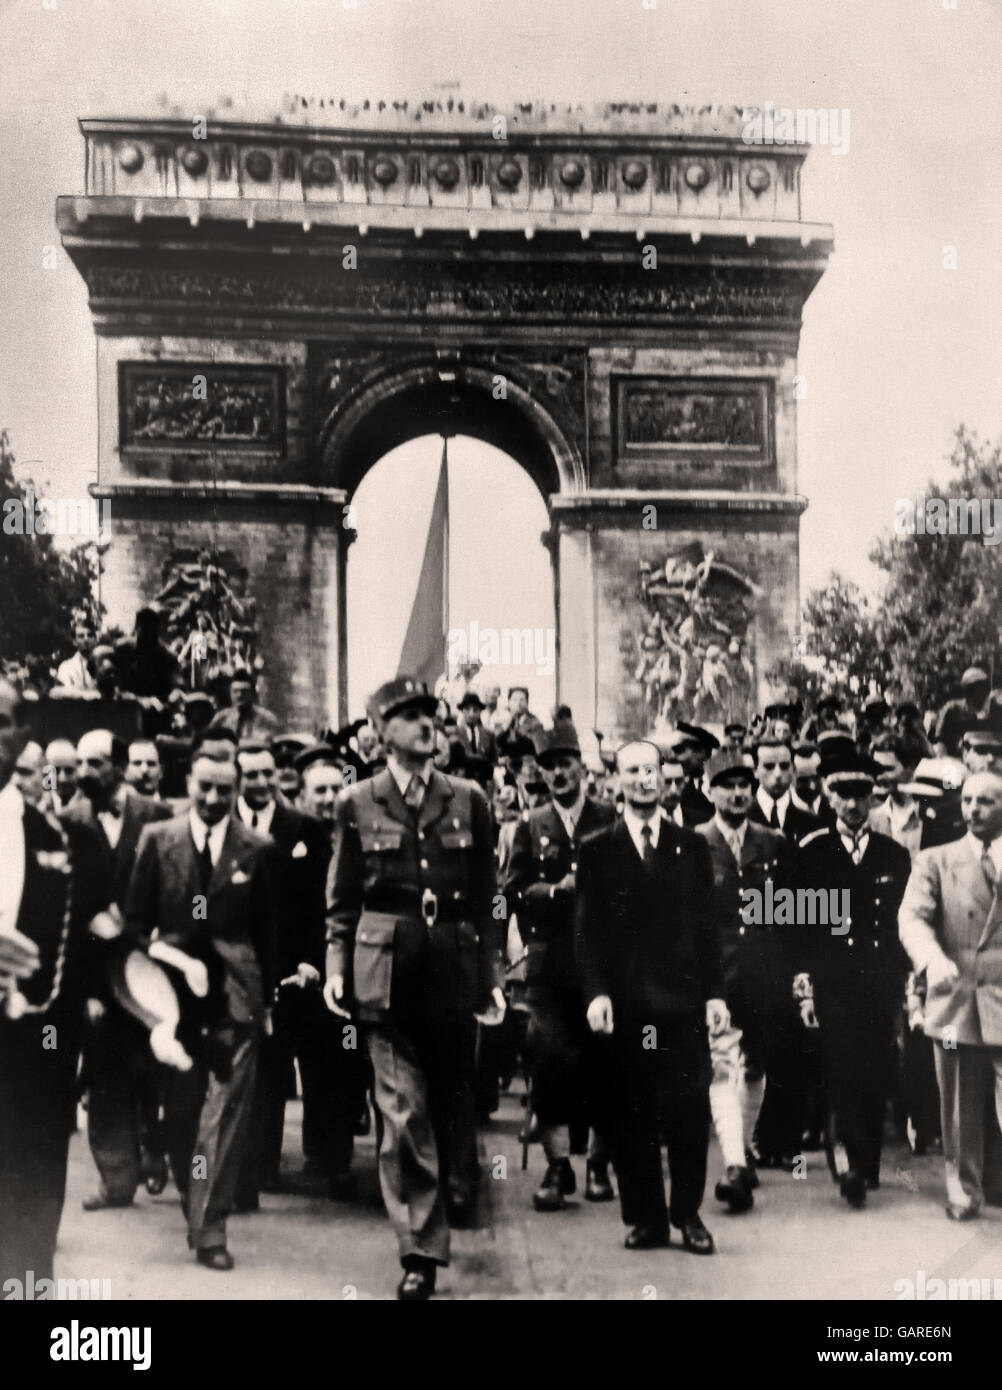 Präsident Charles de Gaulle in Paris - Arc de Triomphe 25 august 1944 Frankreich (Second World War 2 II 1949-1945 Nazi-Deutschland) marschieren Stockfoto